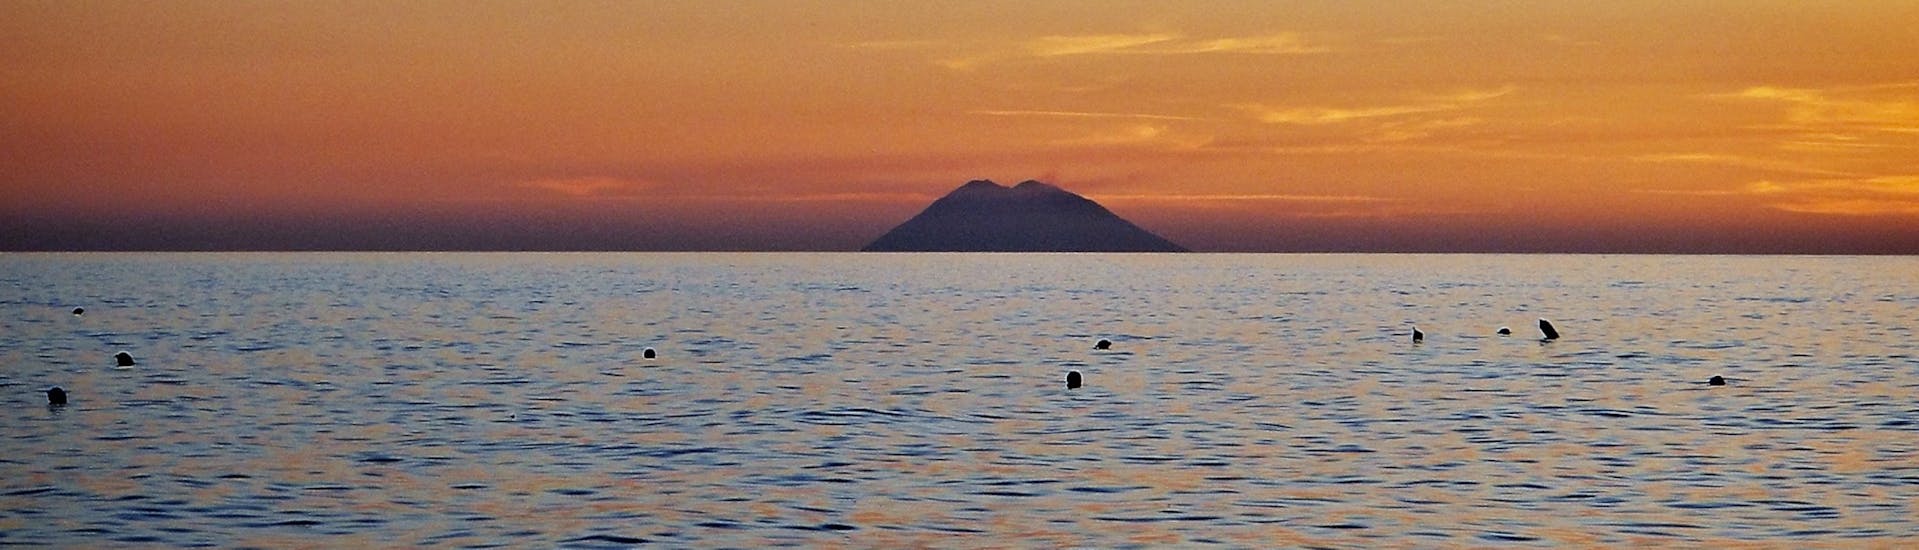 Stromboli bij zonsondergang tijdens de RIB boottocht vanuit Tropea langs de kust van de Goden.